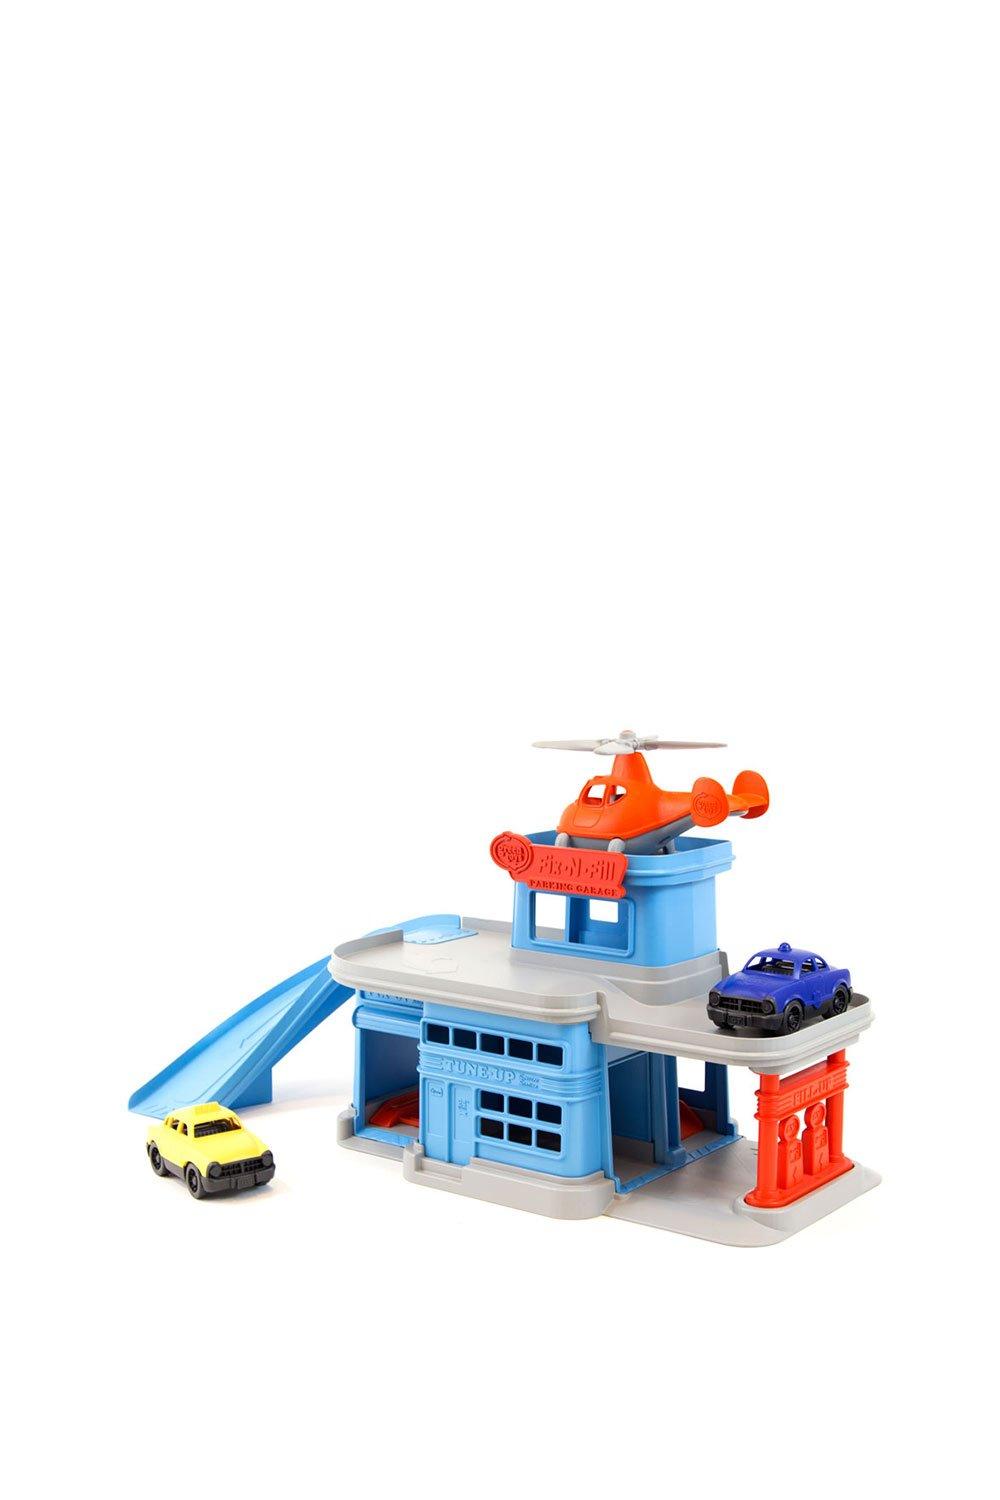 Green Toys Parking Garage Playset|blue